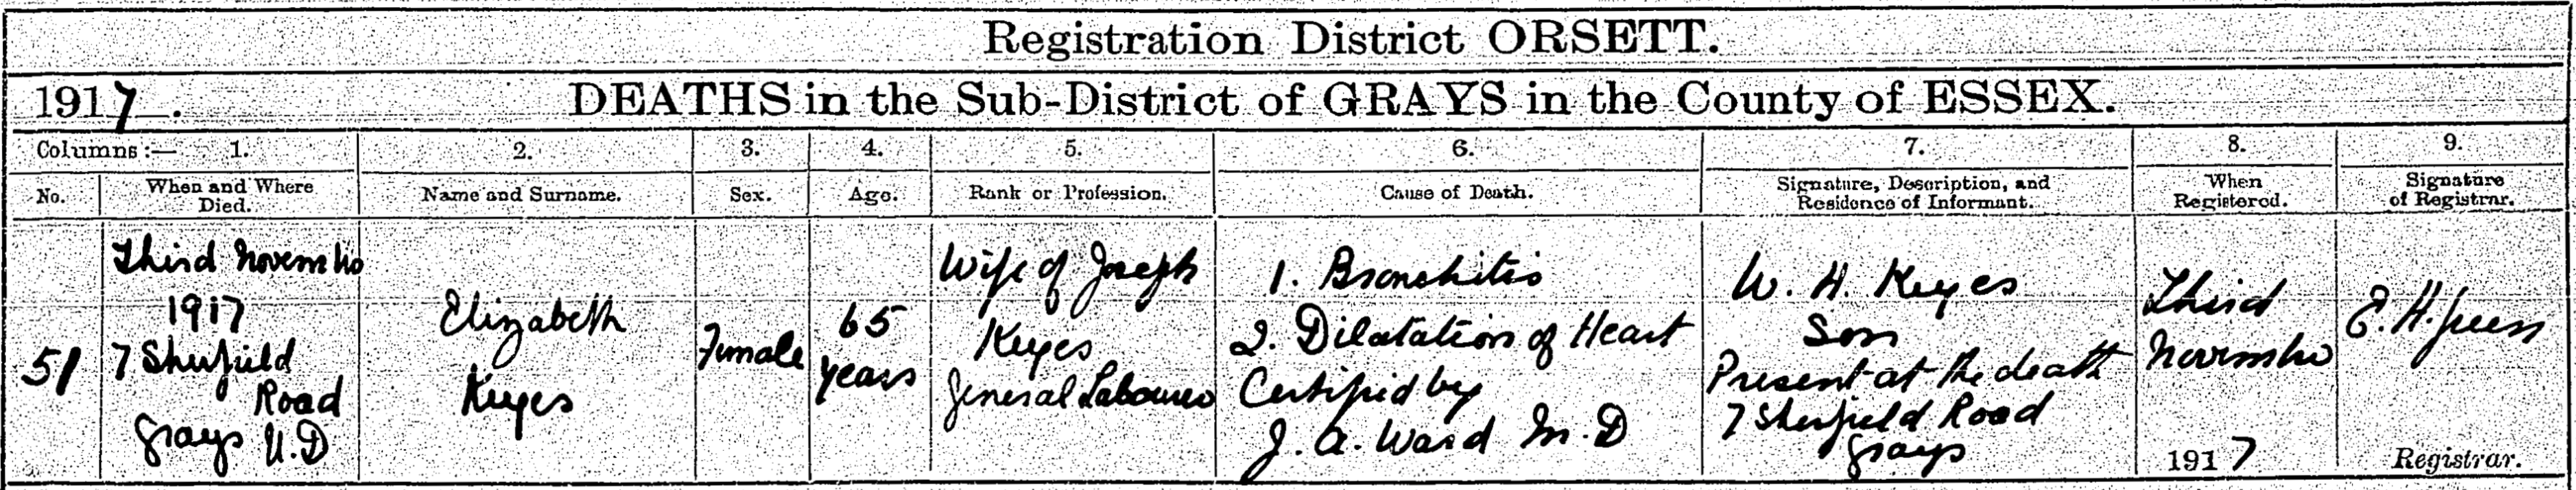 Elizabeth Keyes Death Certificate